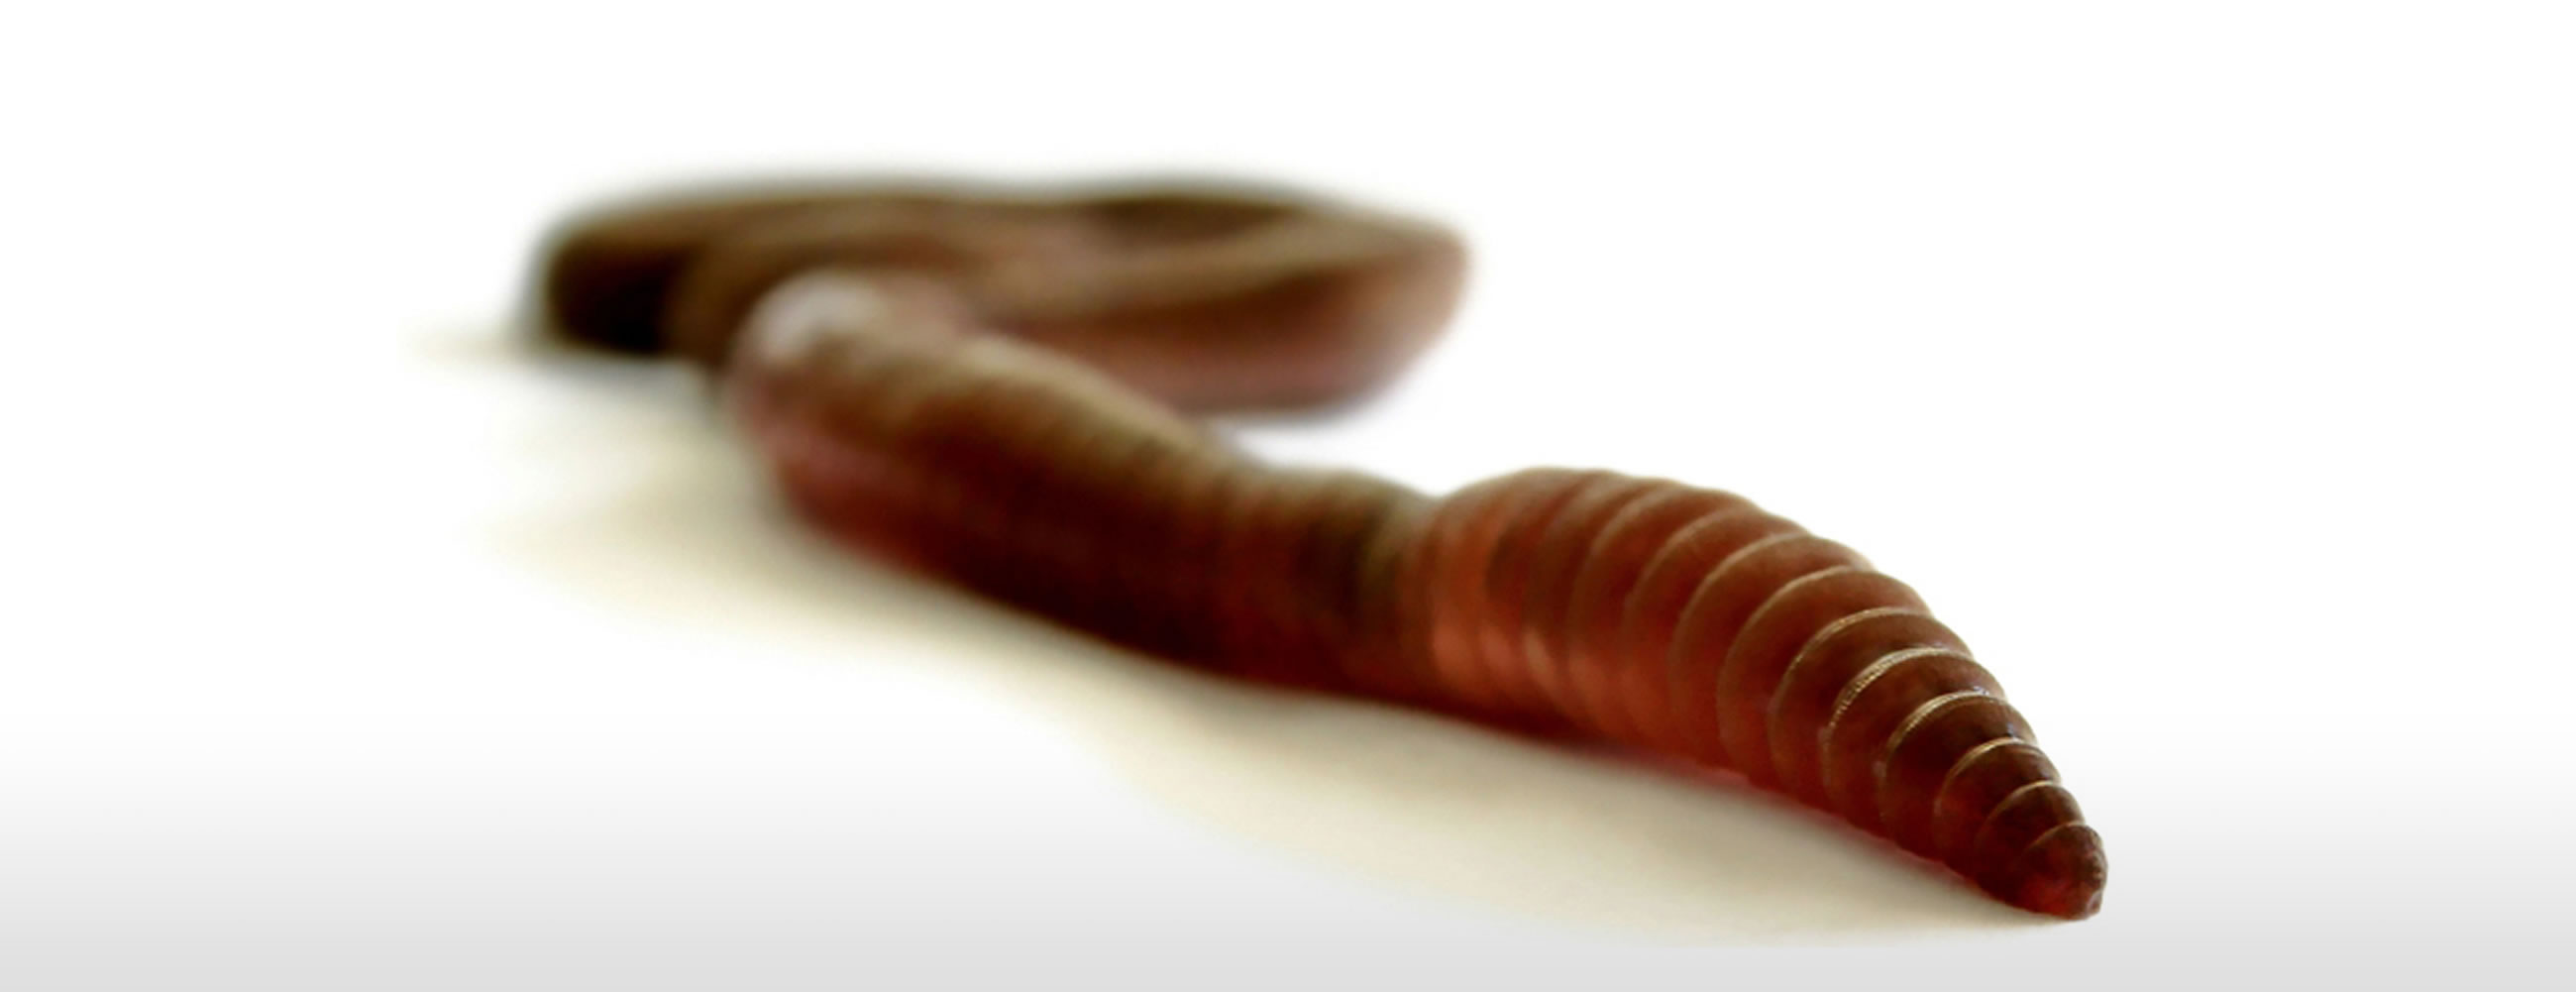 Toxicogenomics Earthworms